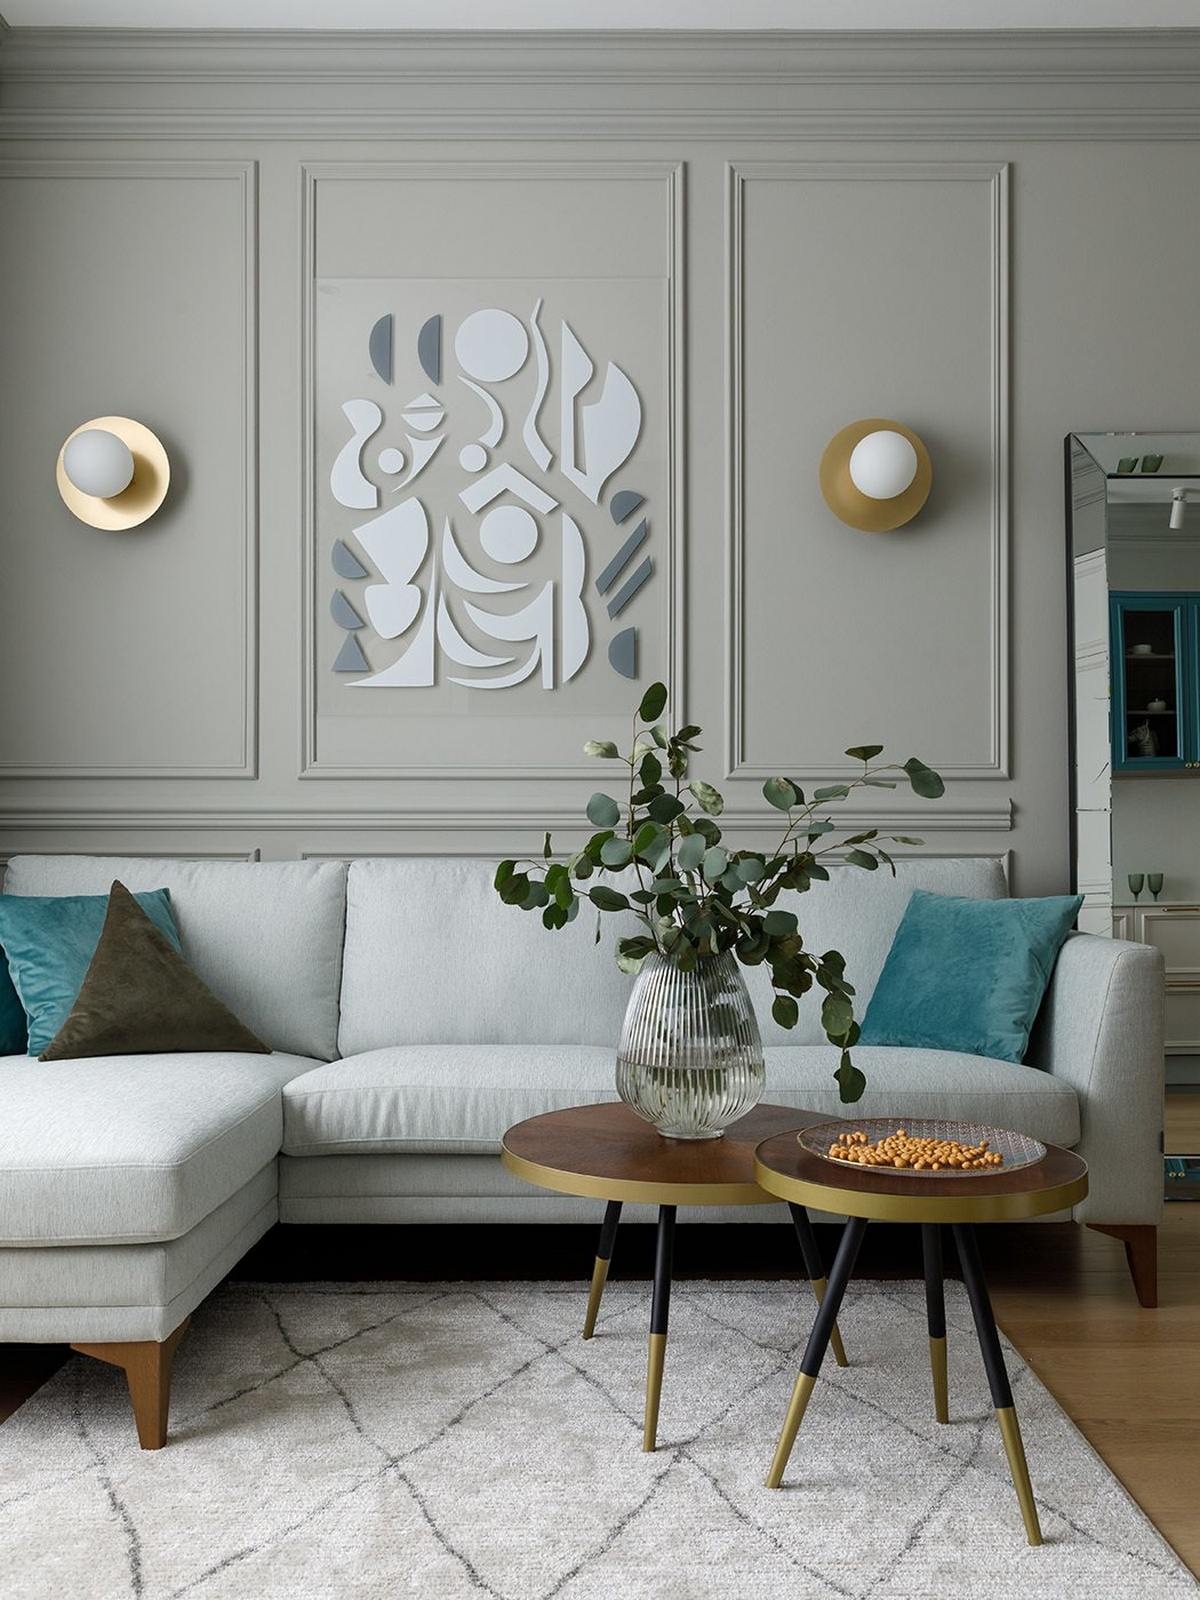 Phòng khách bố trí sofa kiểu module tiện ích, trang trí những chiếc gối tựa màu xanh lam. Bàn nước hình trong '2 trong 1' được trang trí bằng lọ thủy tinh xinh xắn. Trên bức tường, những mảnh gương nhỏ tạo nên một tác phẩm nghệ thuật độc đáo.